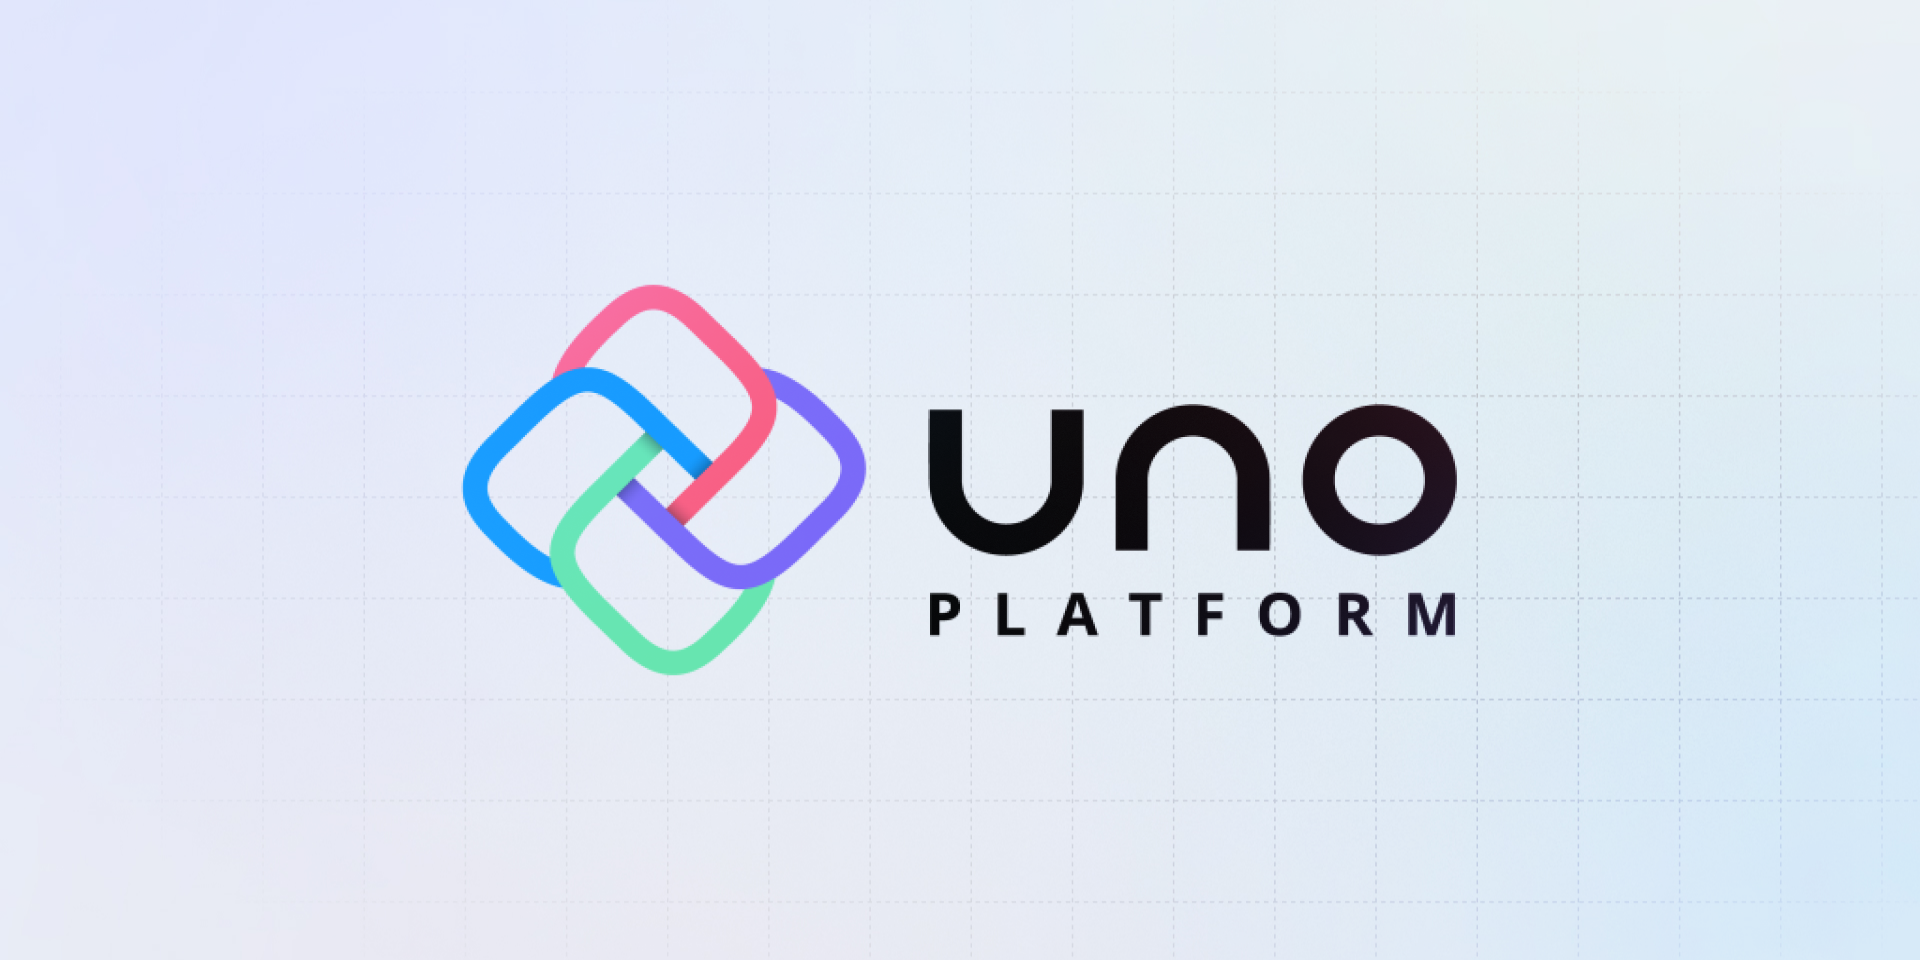 Uno Platform